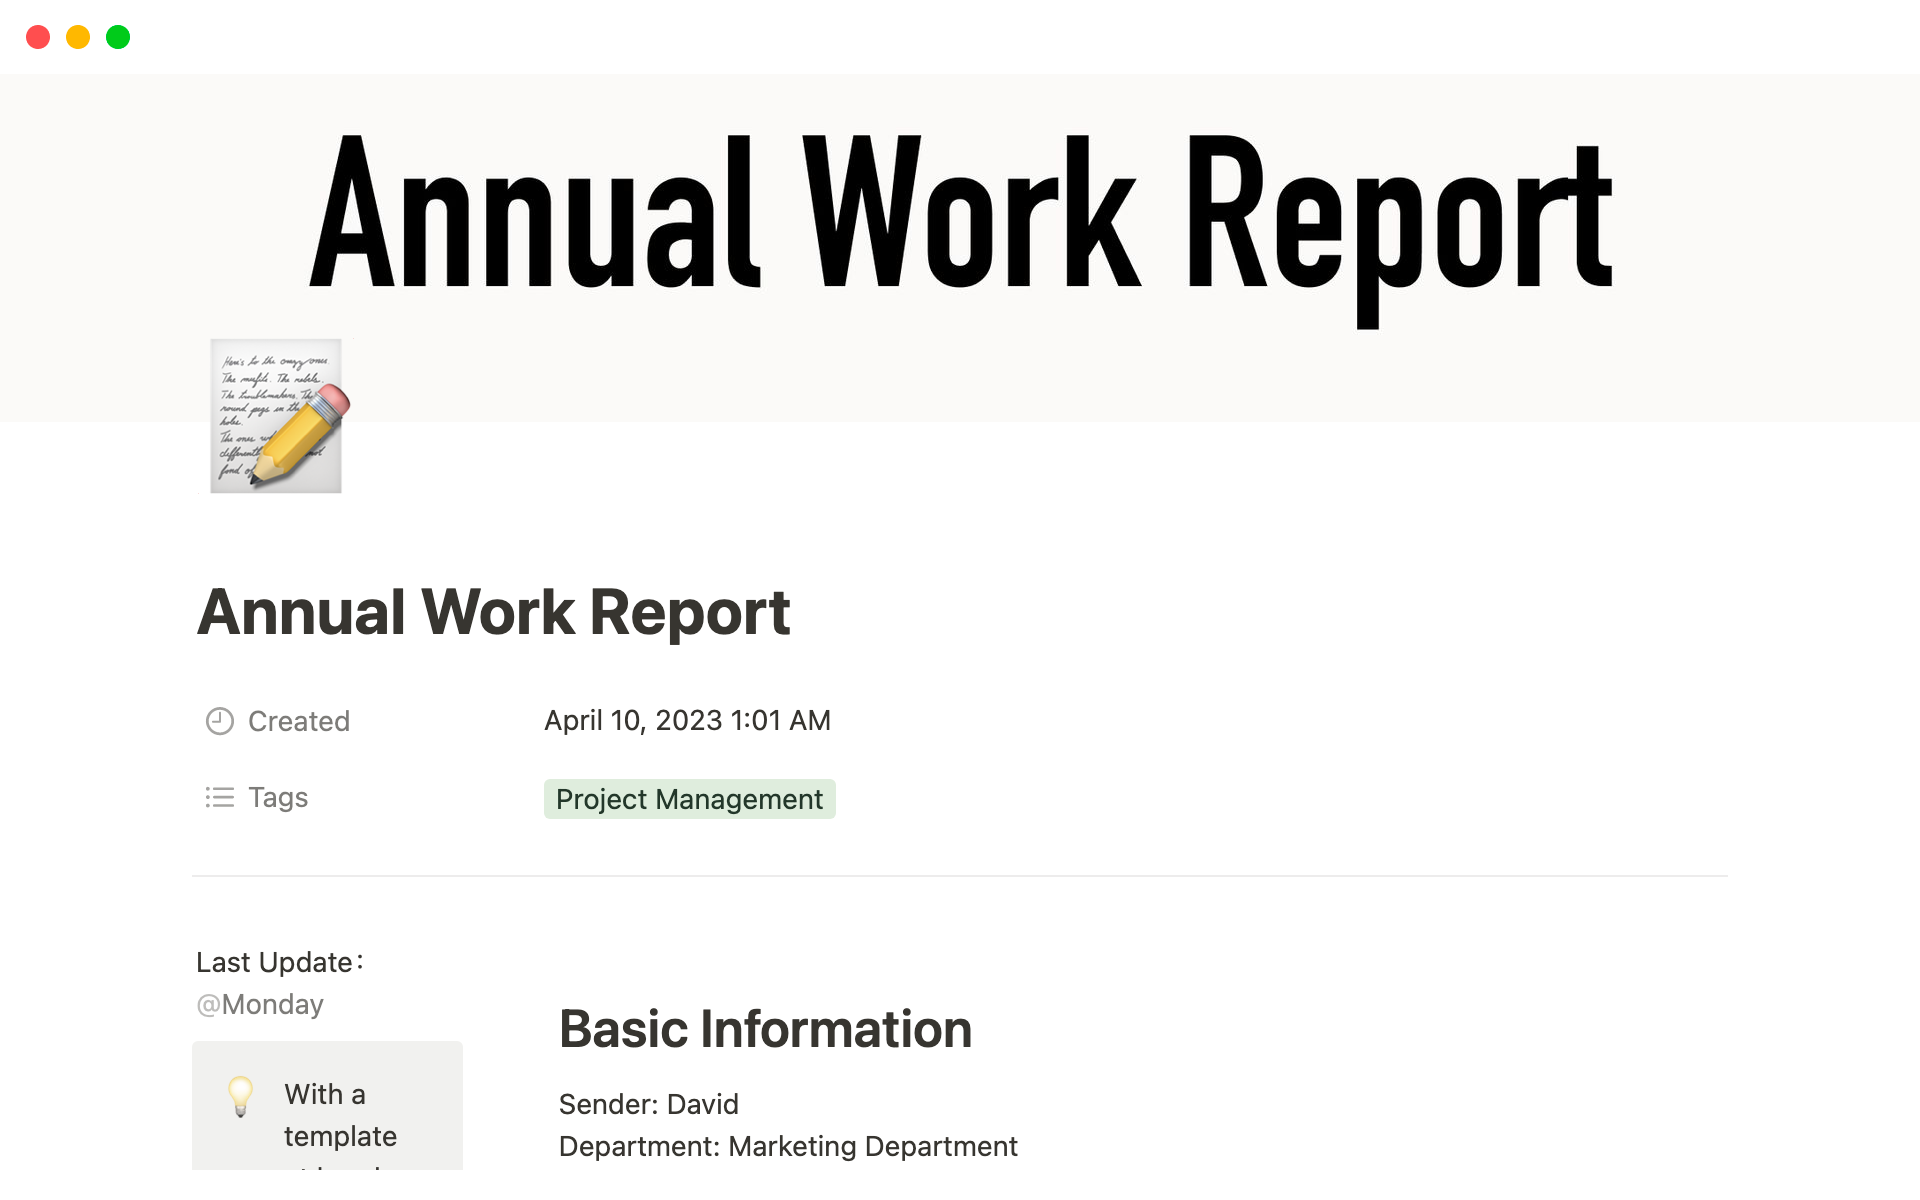 Uma prévia do modelo para Annual Work Report